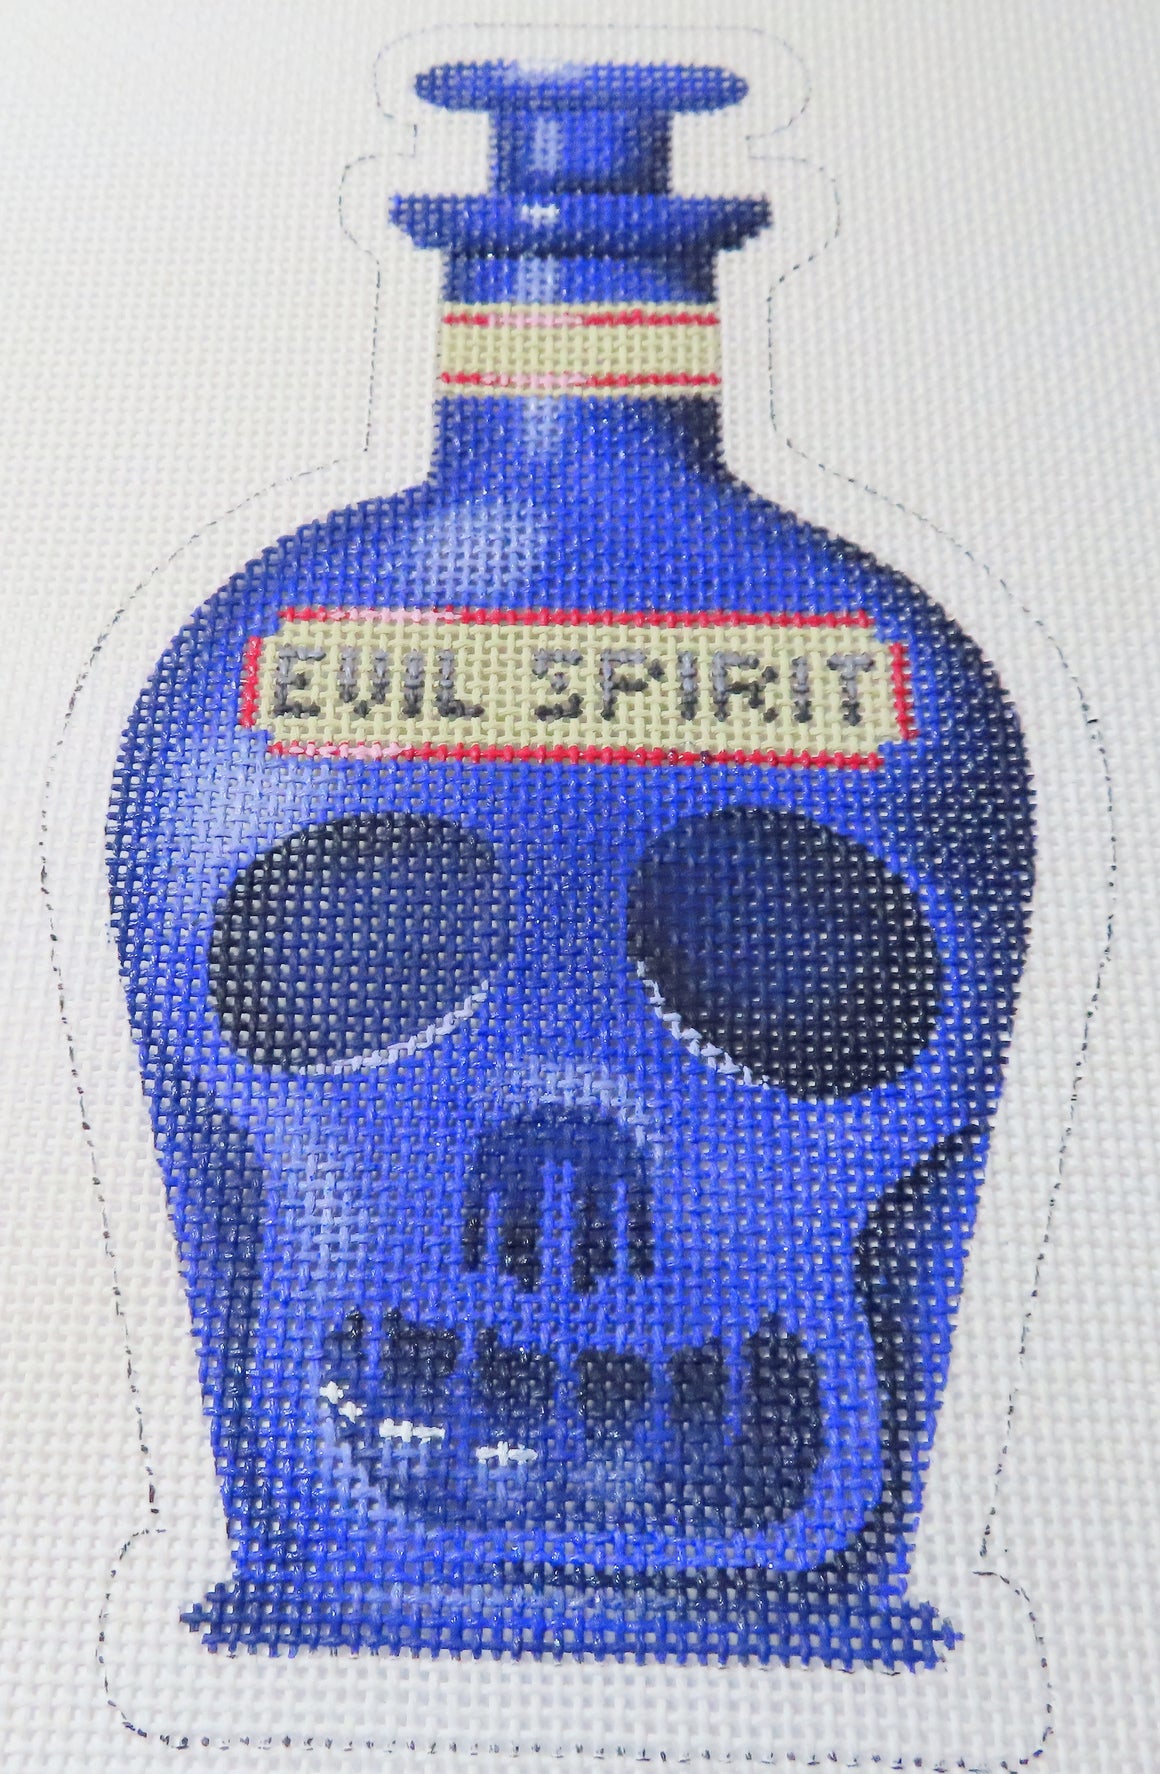 Evil Spirit Poison Bottle